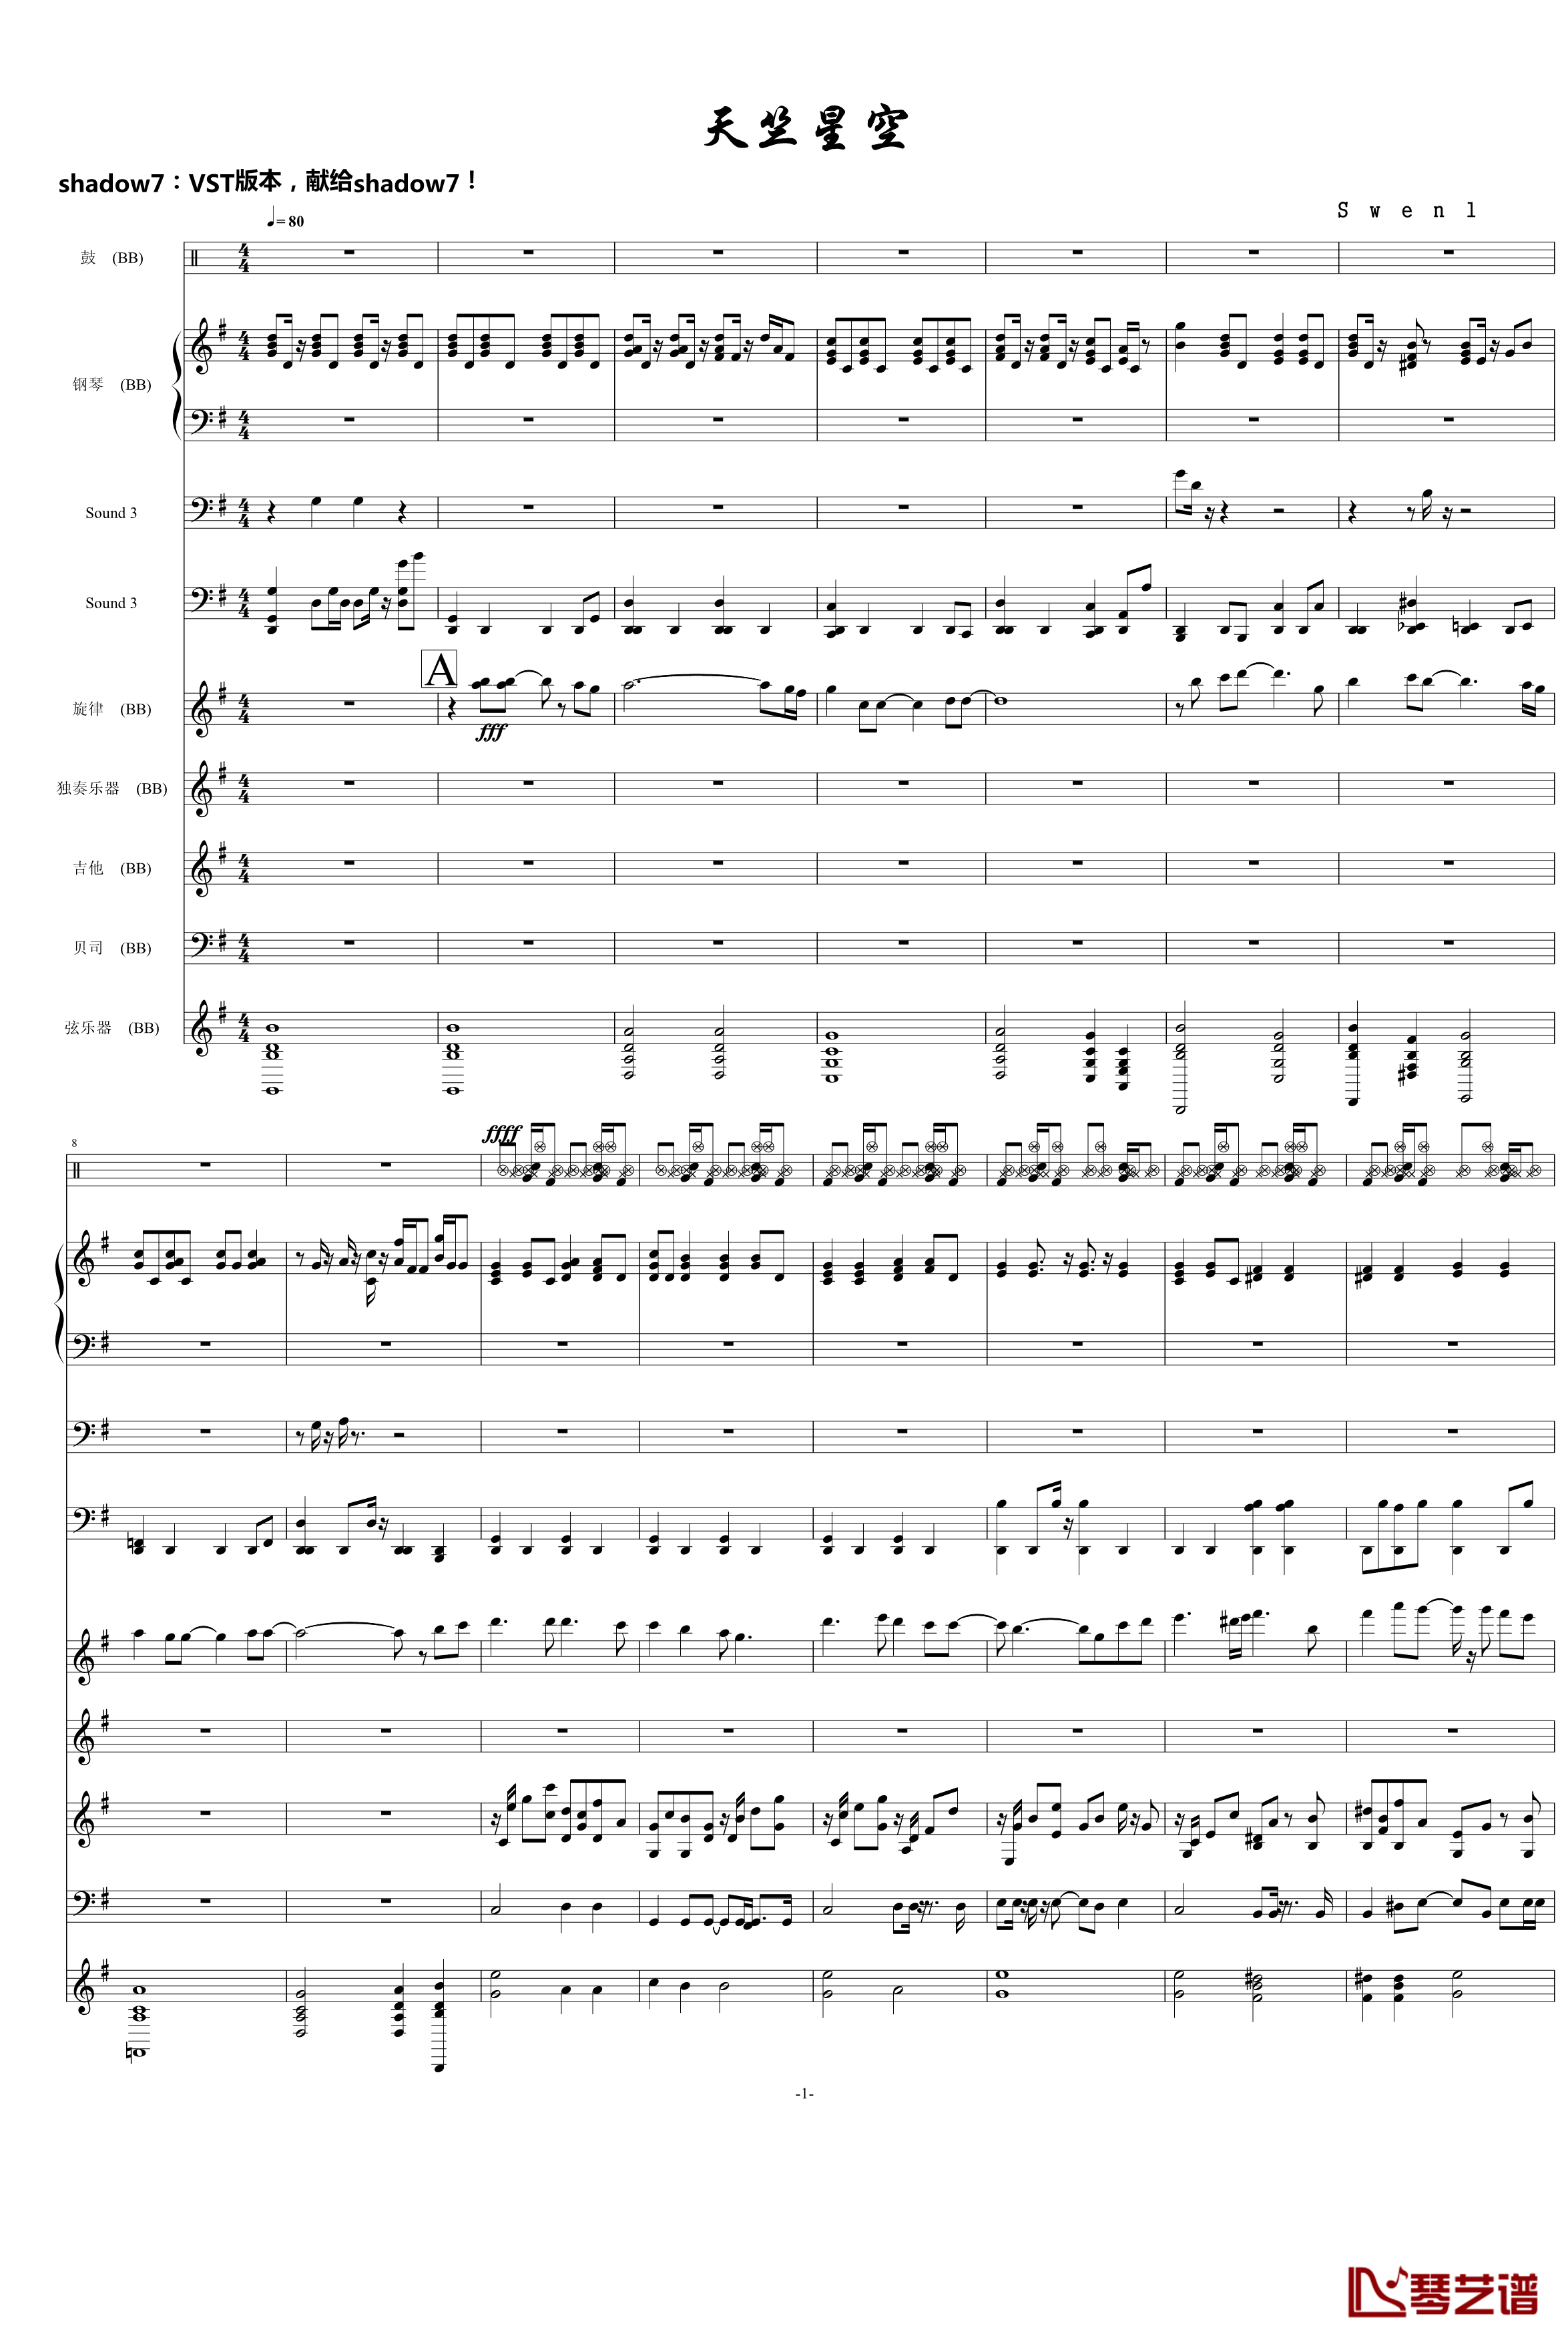 天竺星空钢琴谱-VST重新修改-swenl1